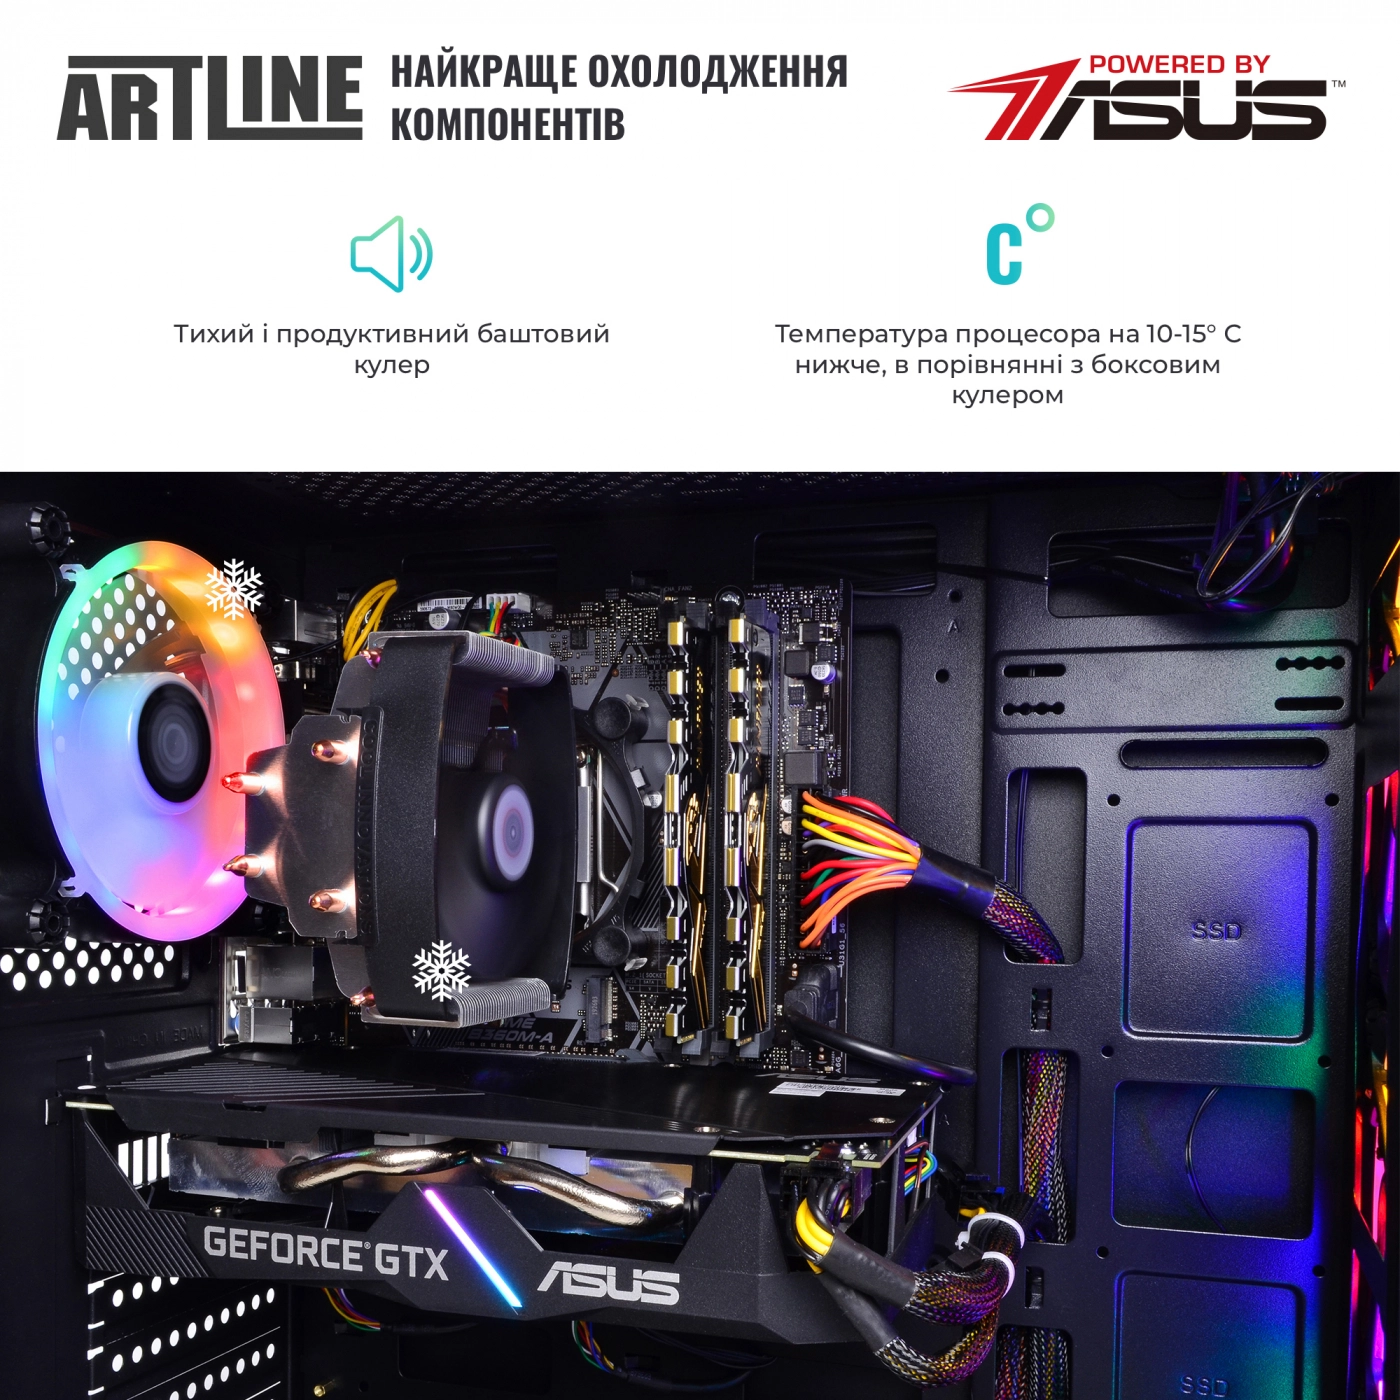 Купить Компьютер ARTLINE Gaming X74v16 - фото 7